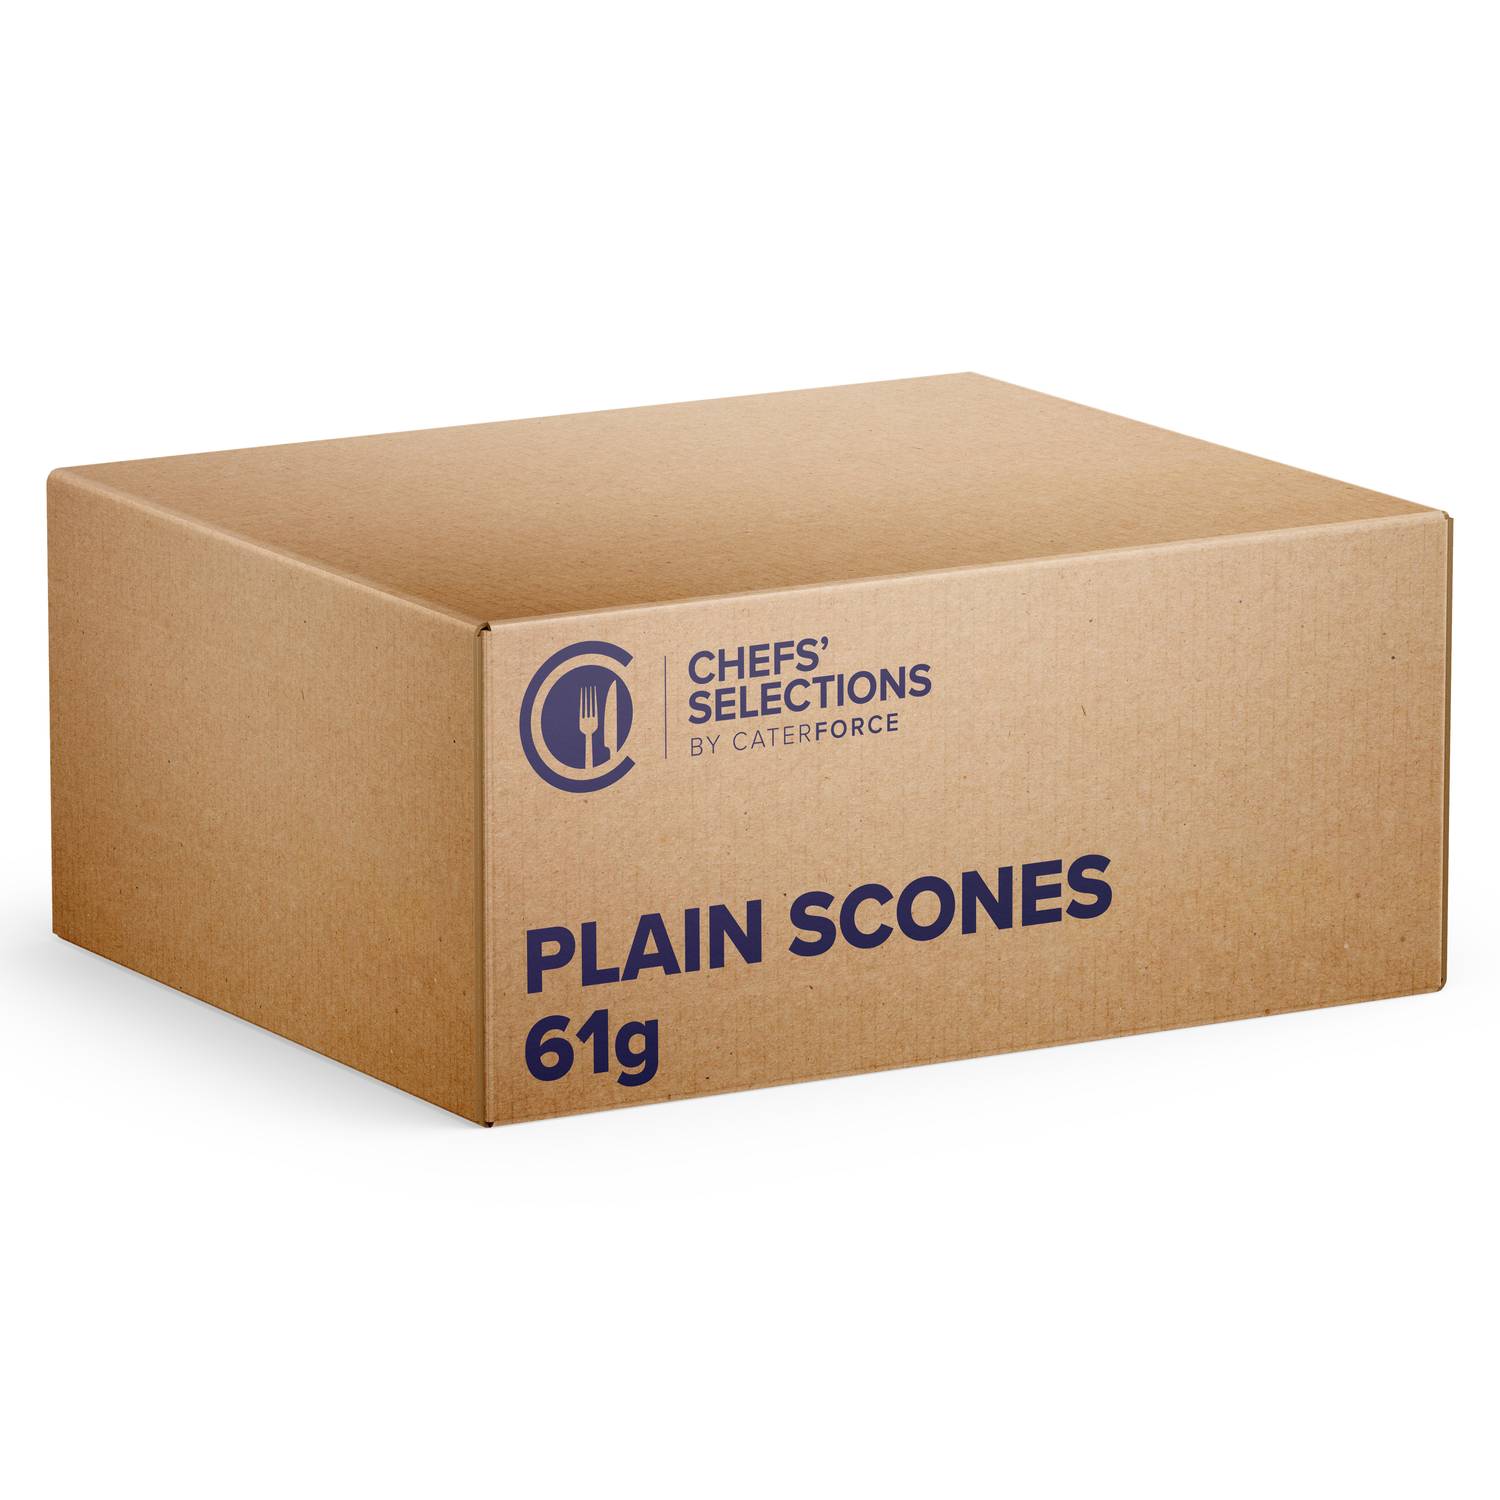 Chefs’ Selections Plain Scones (50 x 61g)